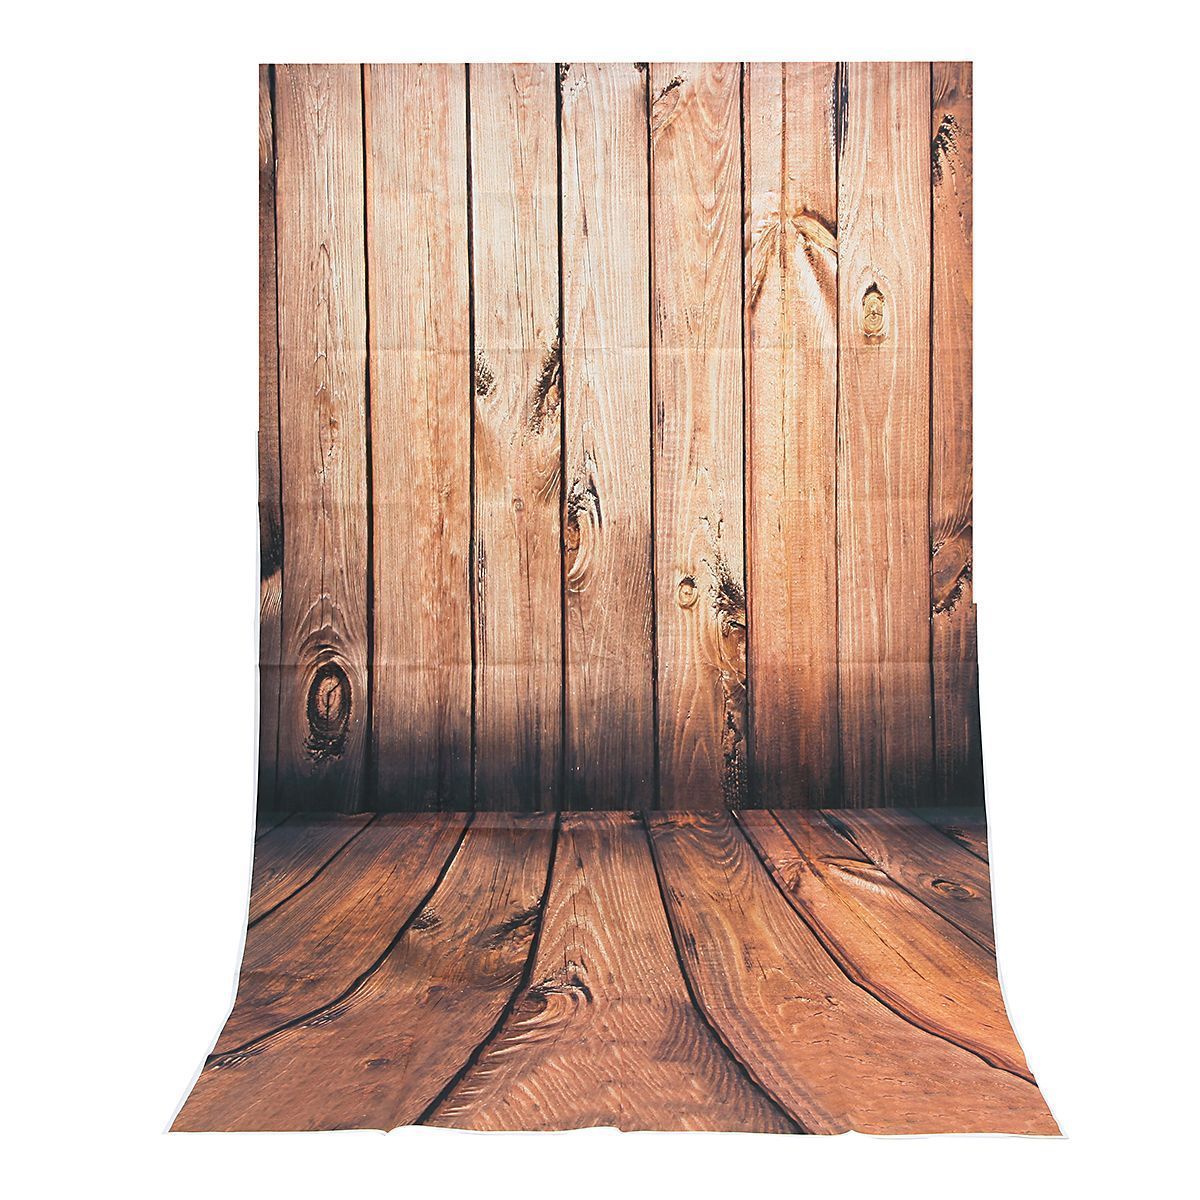 3x5FT-Vinyl-Wood-Wall-Floor-Photography-Backdrop-Background-Studio-Prop-1387983